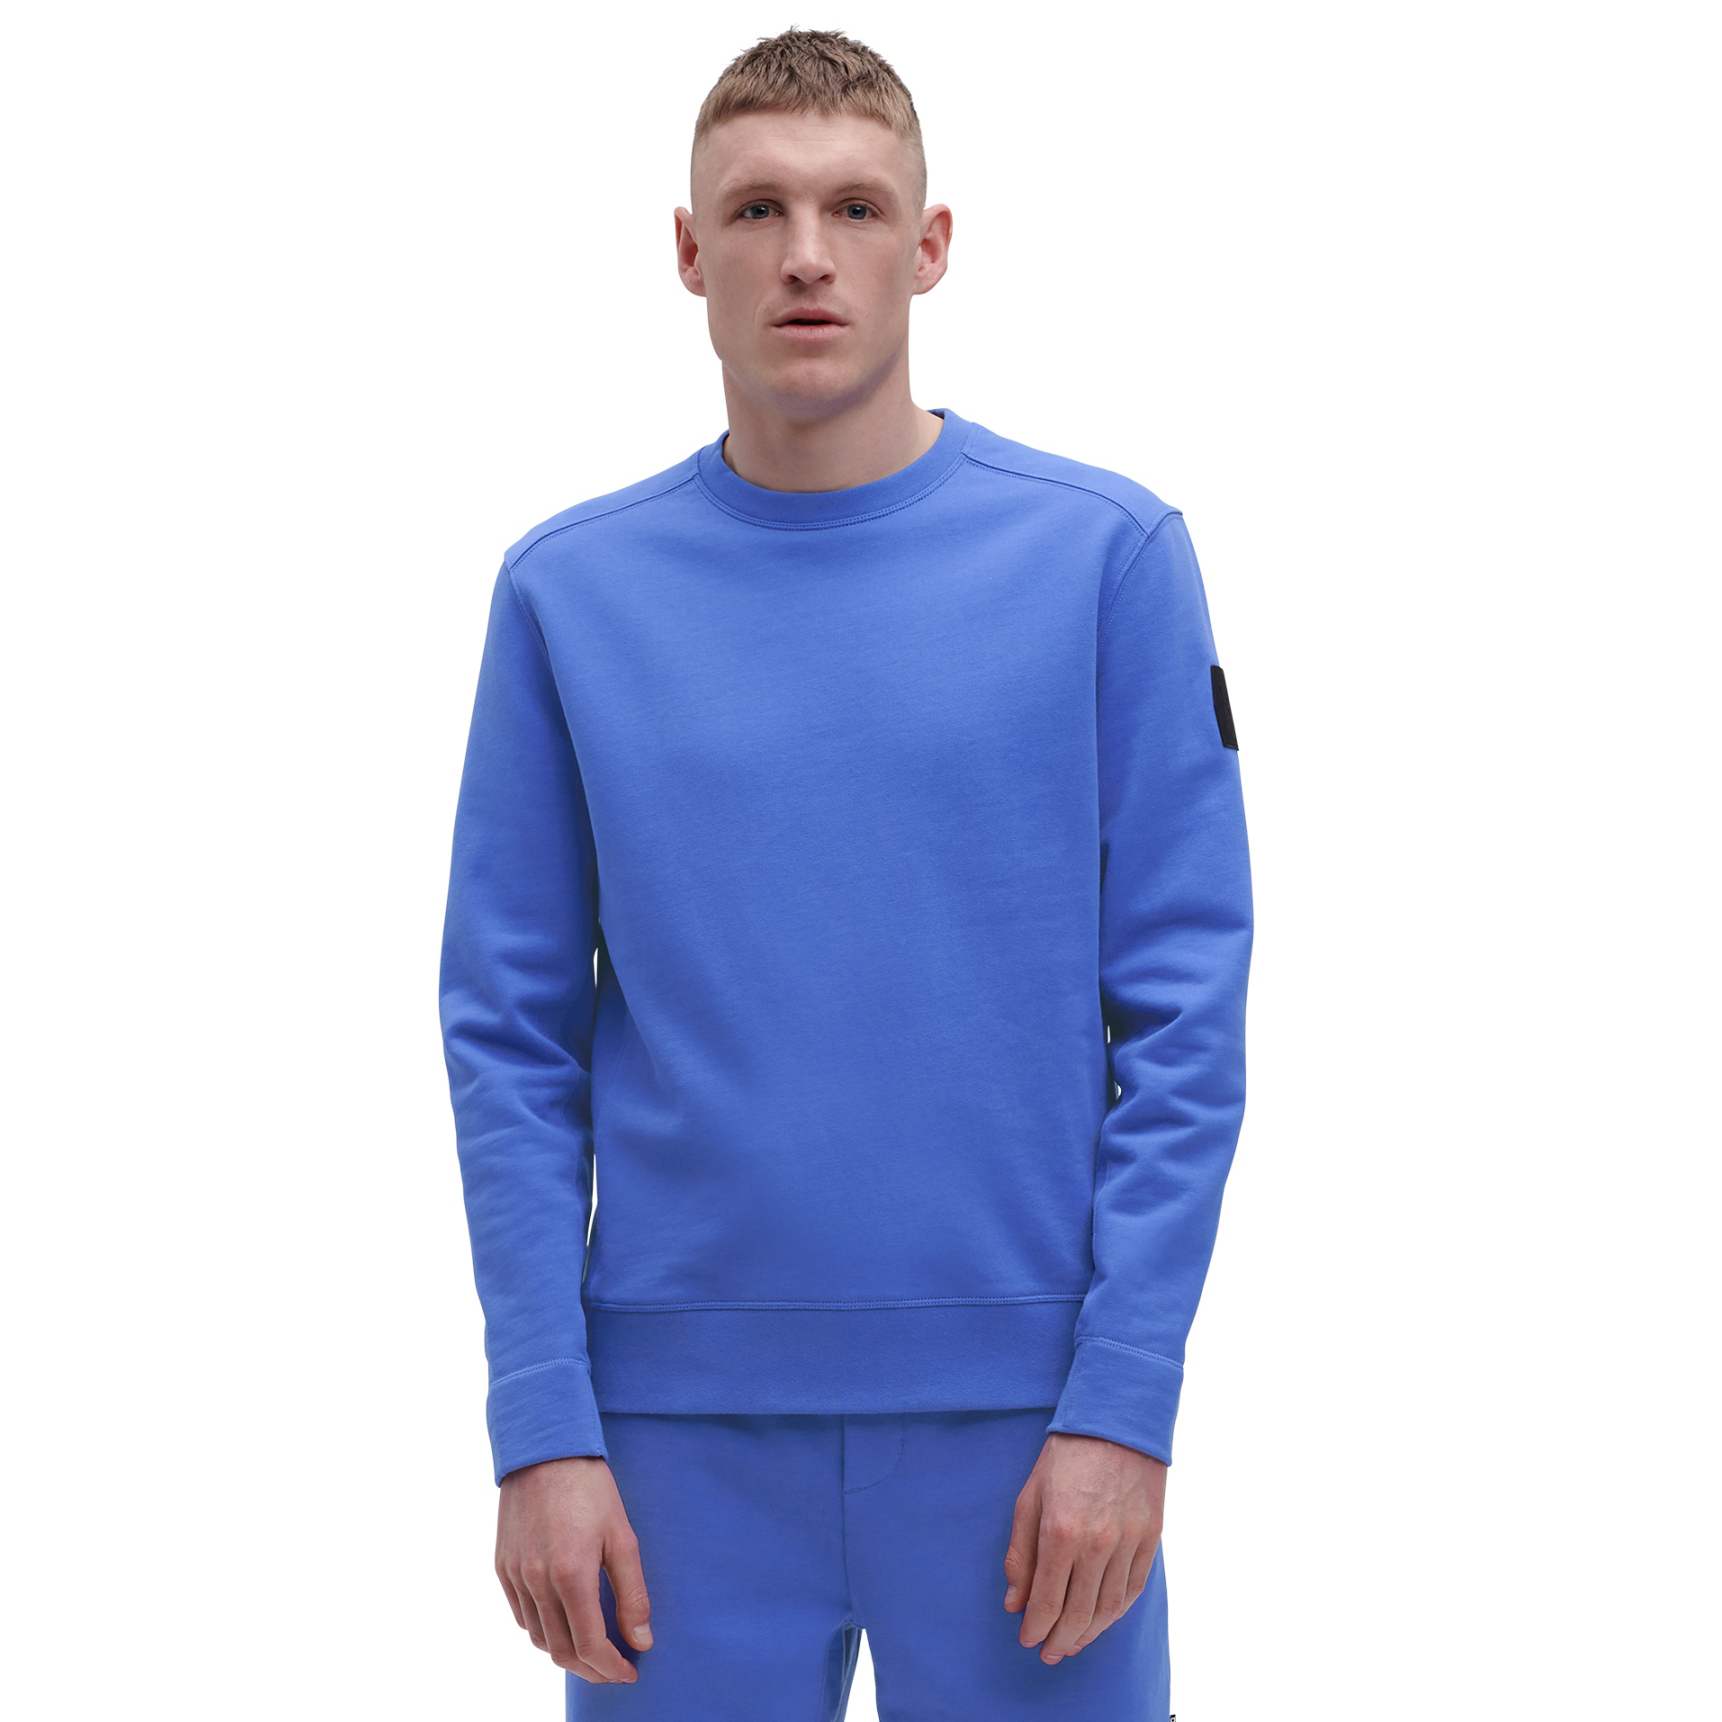 Produktbild von On Crew Neck Sweatshirt - Cobalt